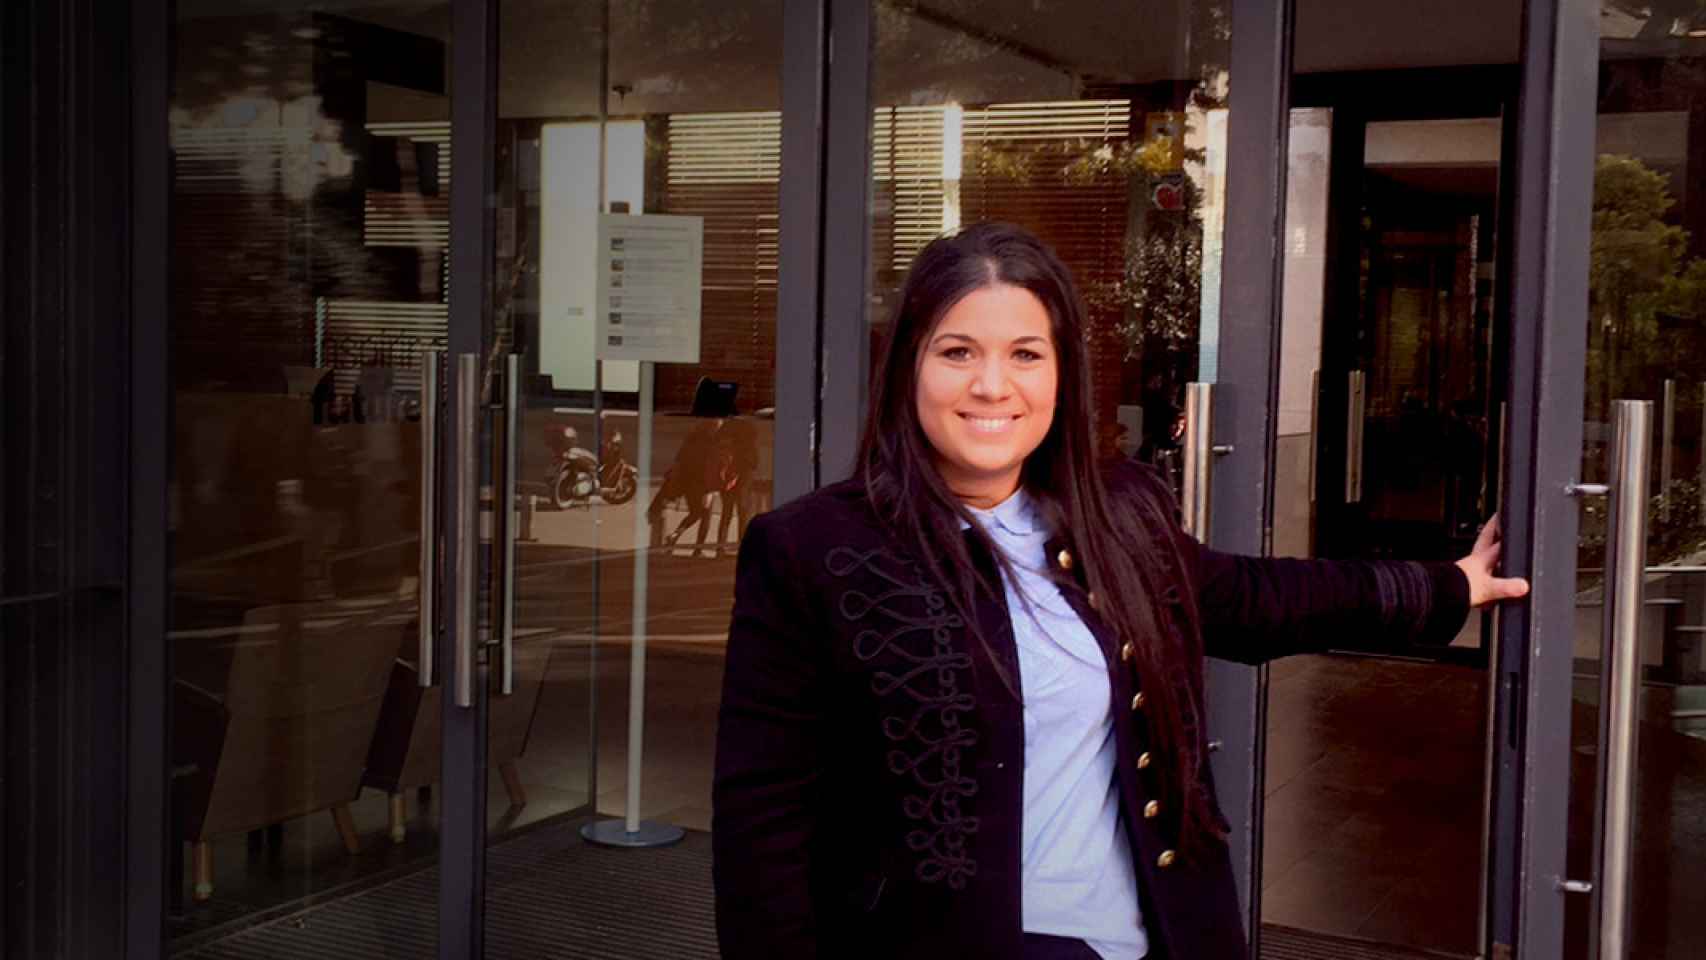 Susana Martínez Heredia, la 'gitana economista', en la puerta de la escuela de negocios Esade / CG